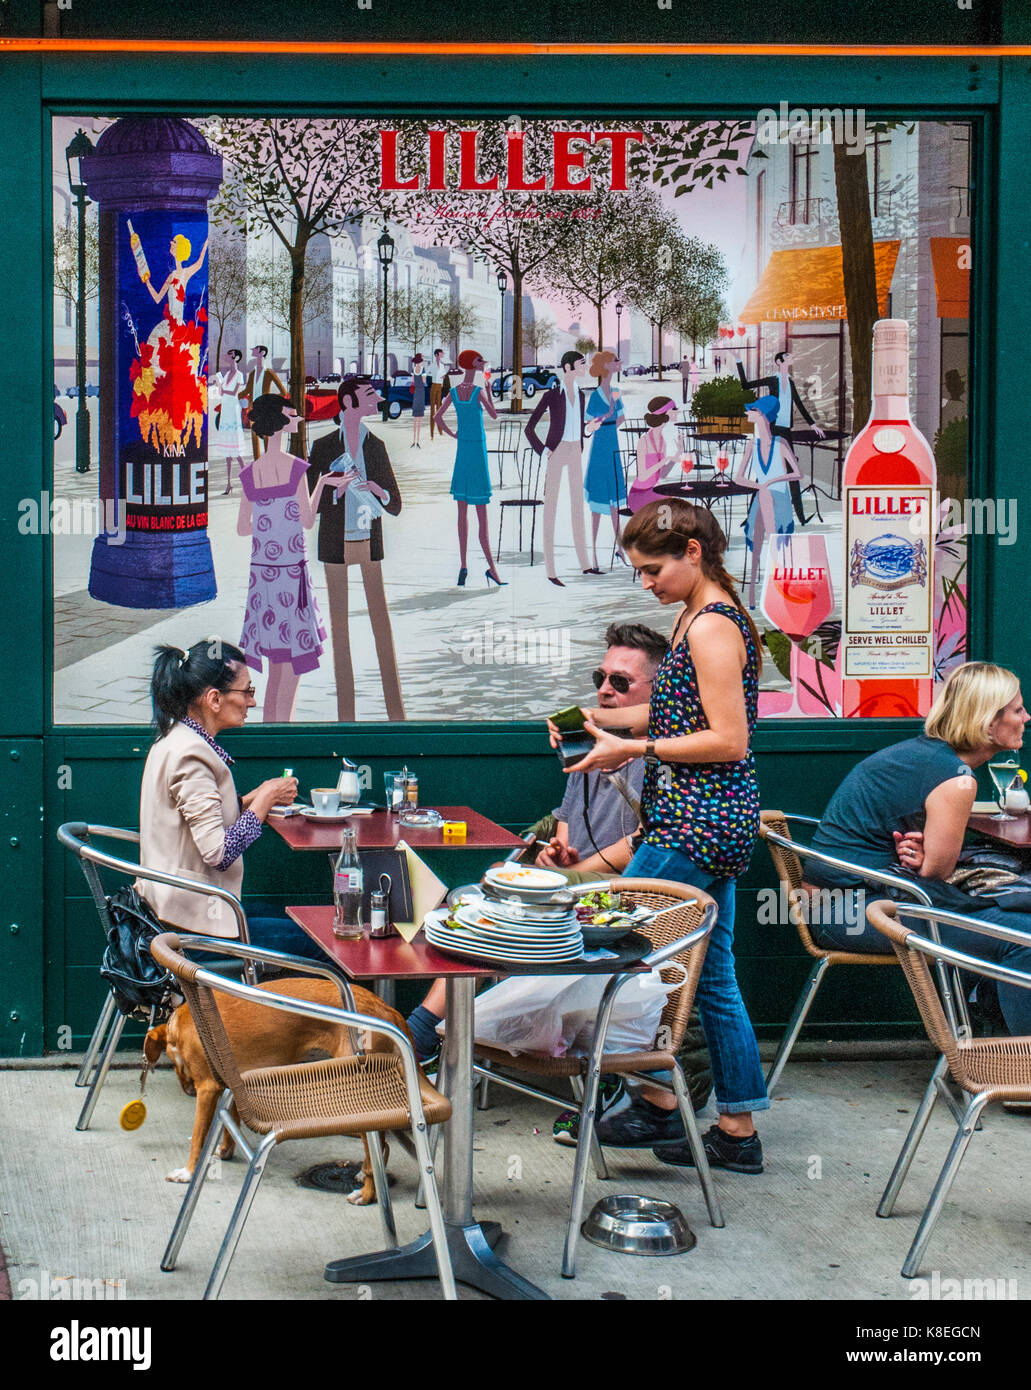 Cameriera di prendere un pranzo di fine da un giovane al naschmarkt mercato domenicale, Vienna, Austria, contro lo sfondo di un grande cartellone pubblicitario Foto Stock